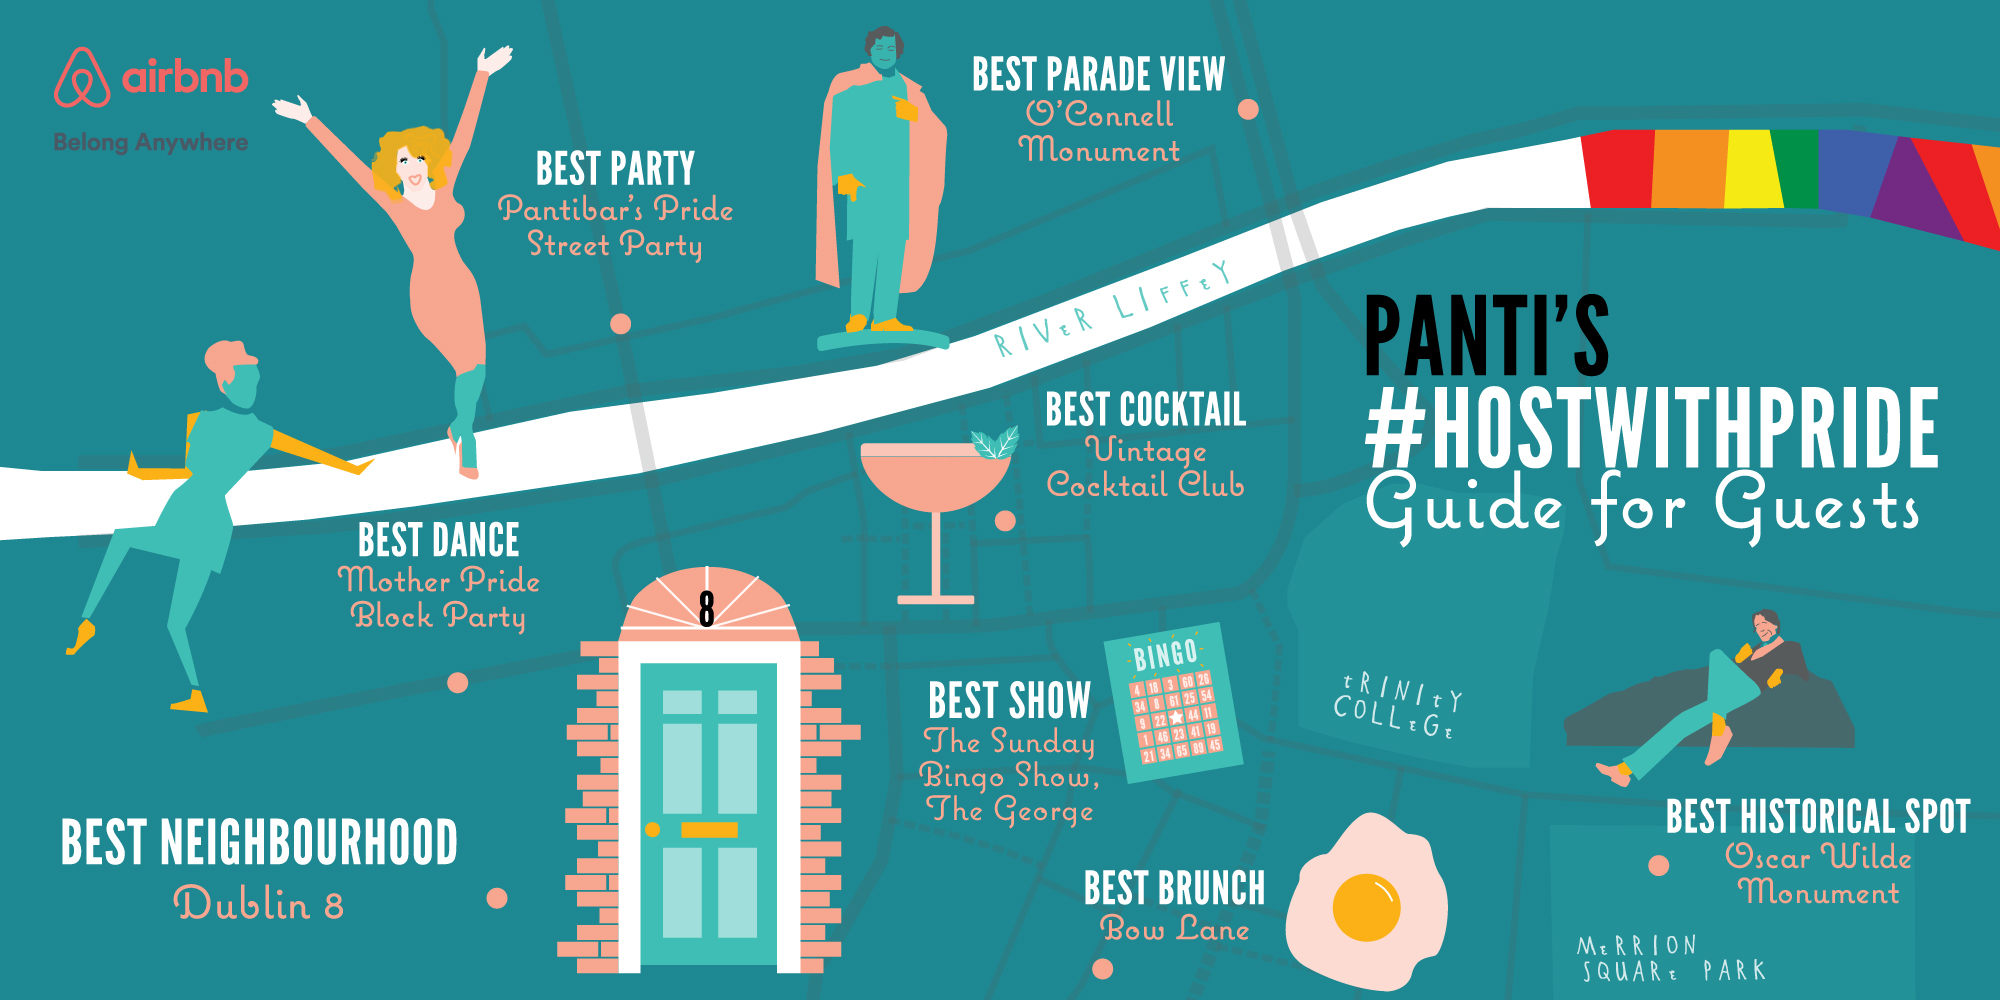 Panti's Guide